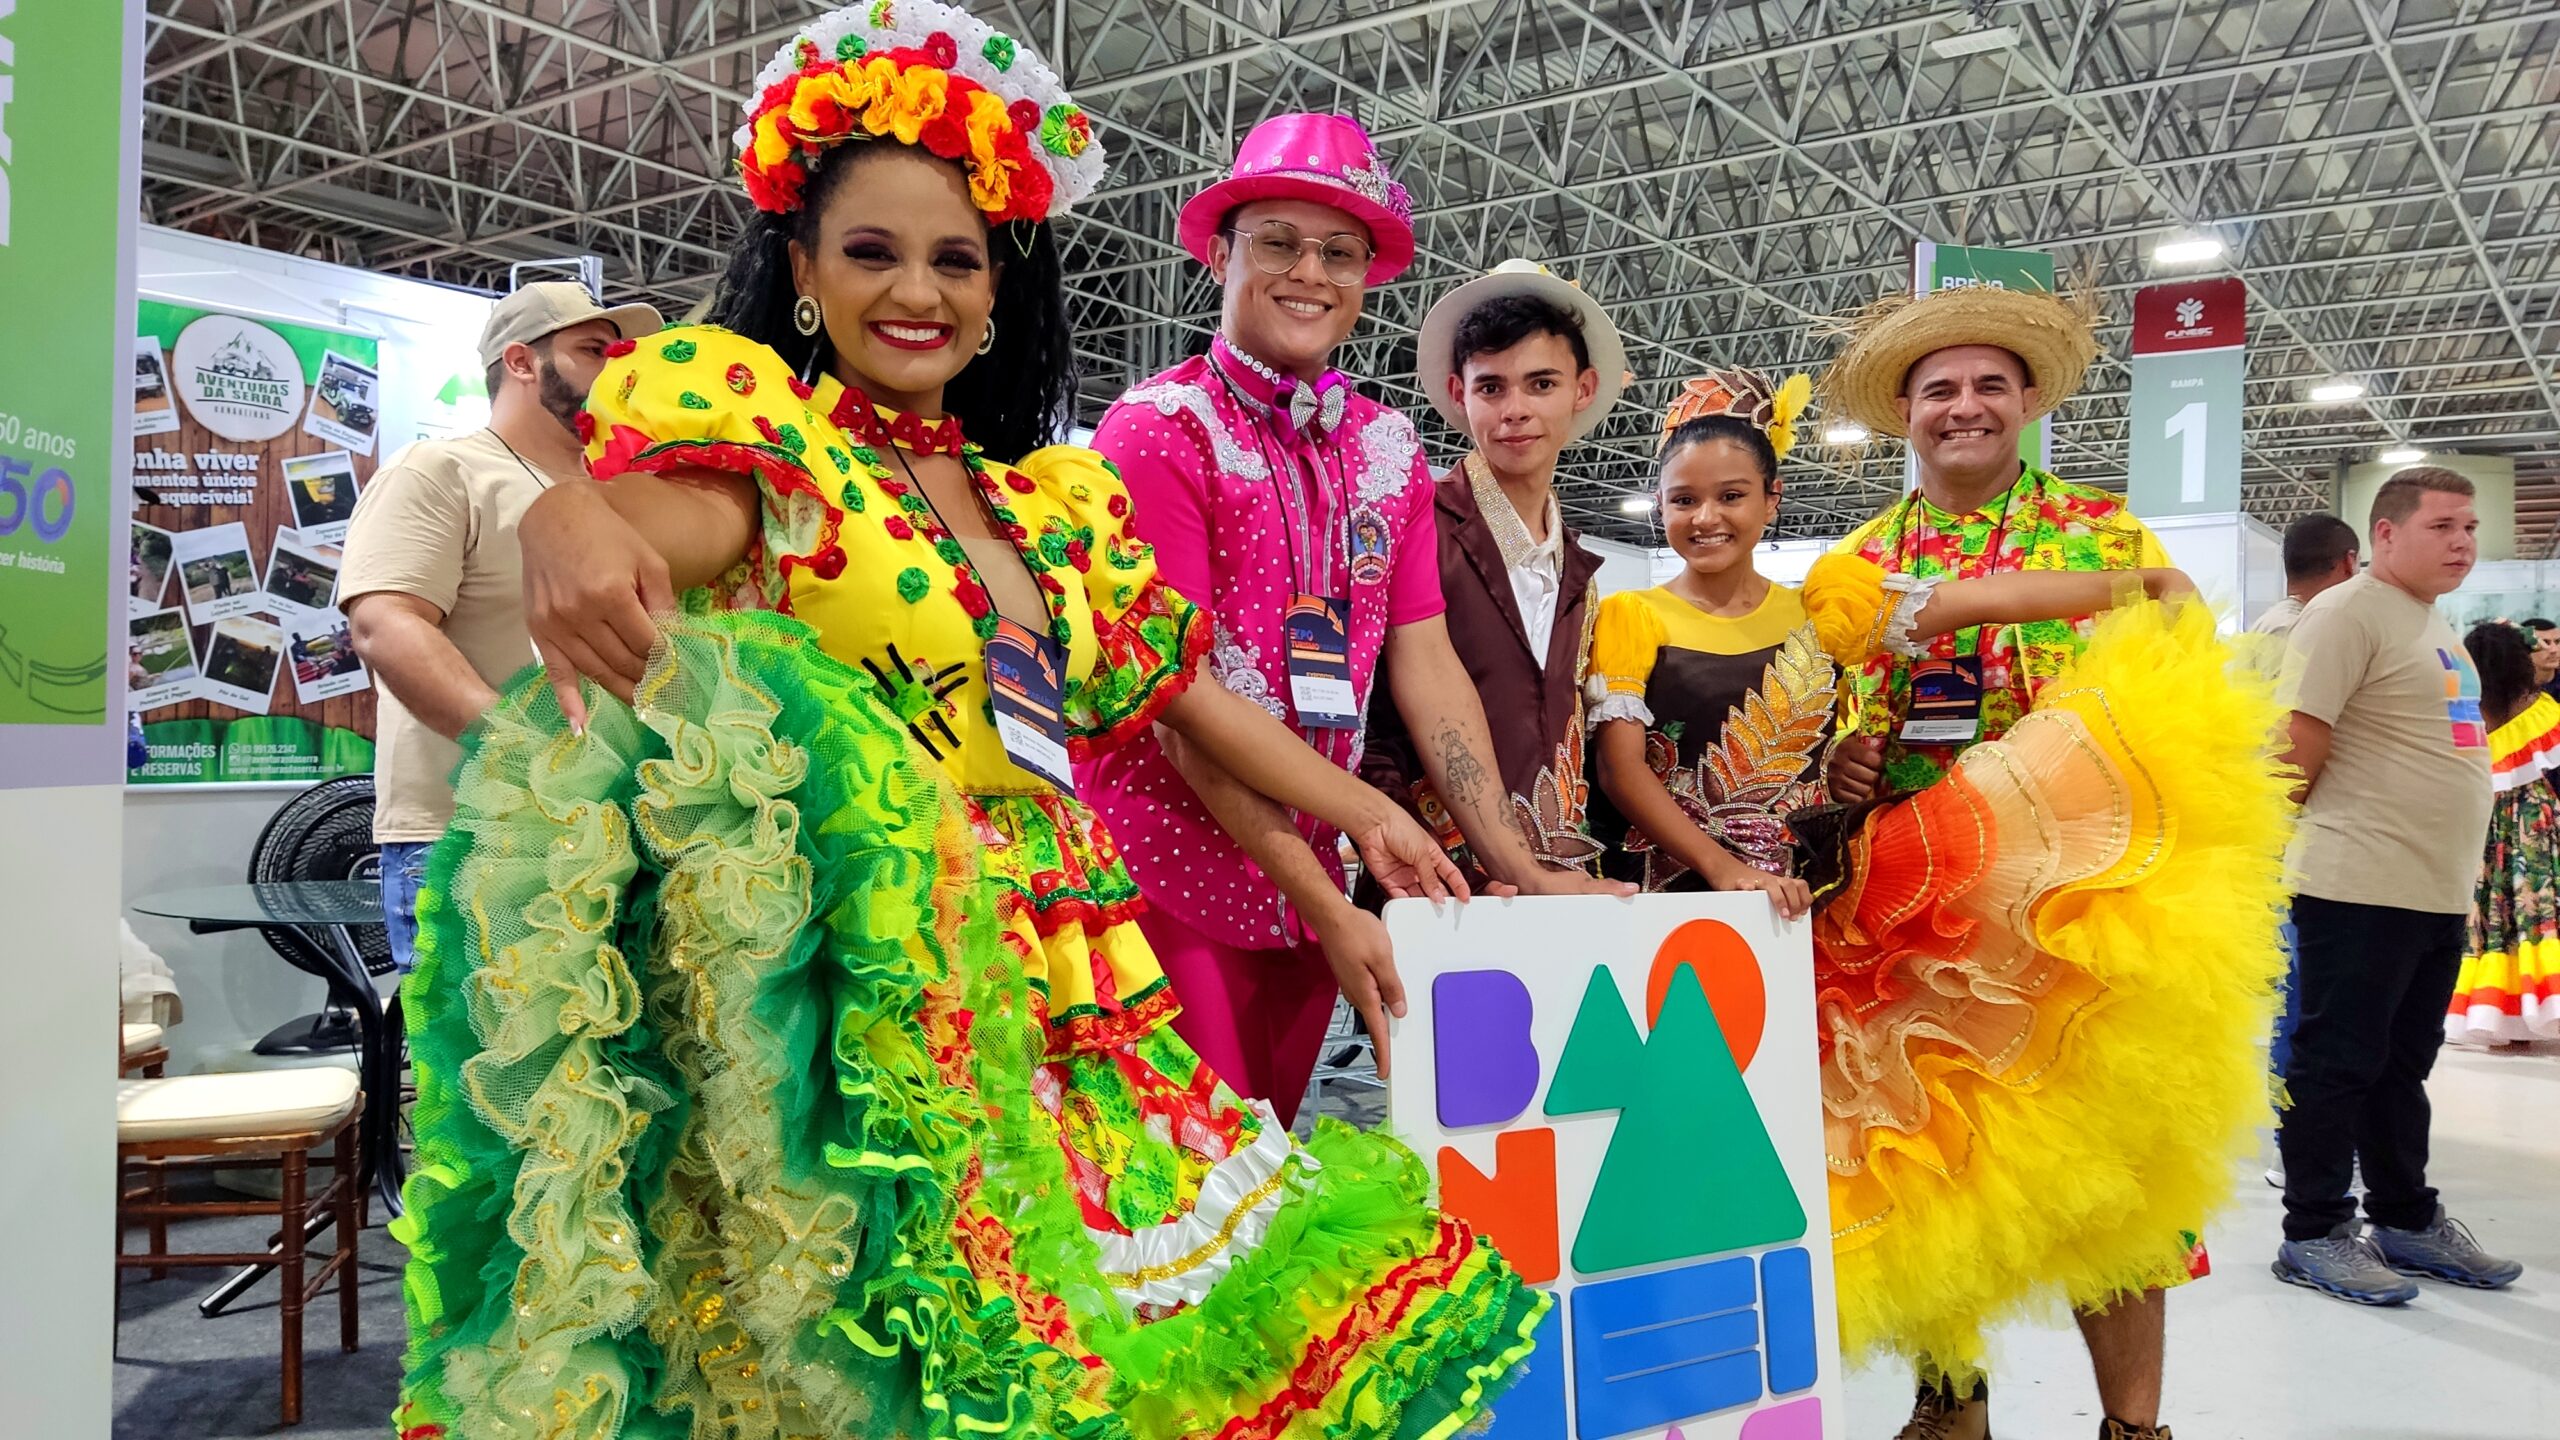 Bananeiras participa da Expo Turismo 2022 entregando a proposta “entre no clima”